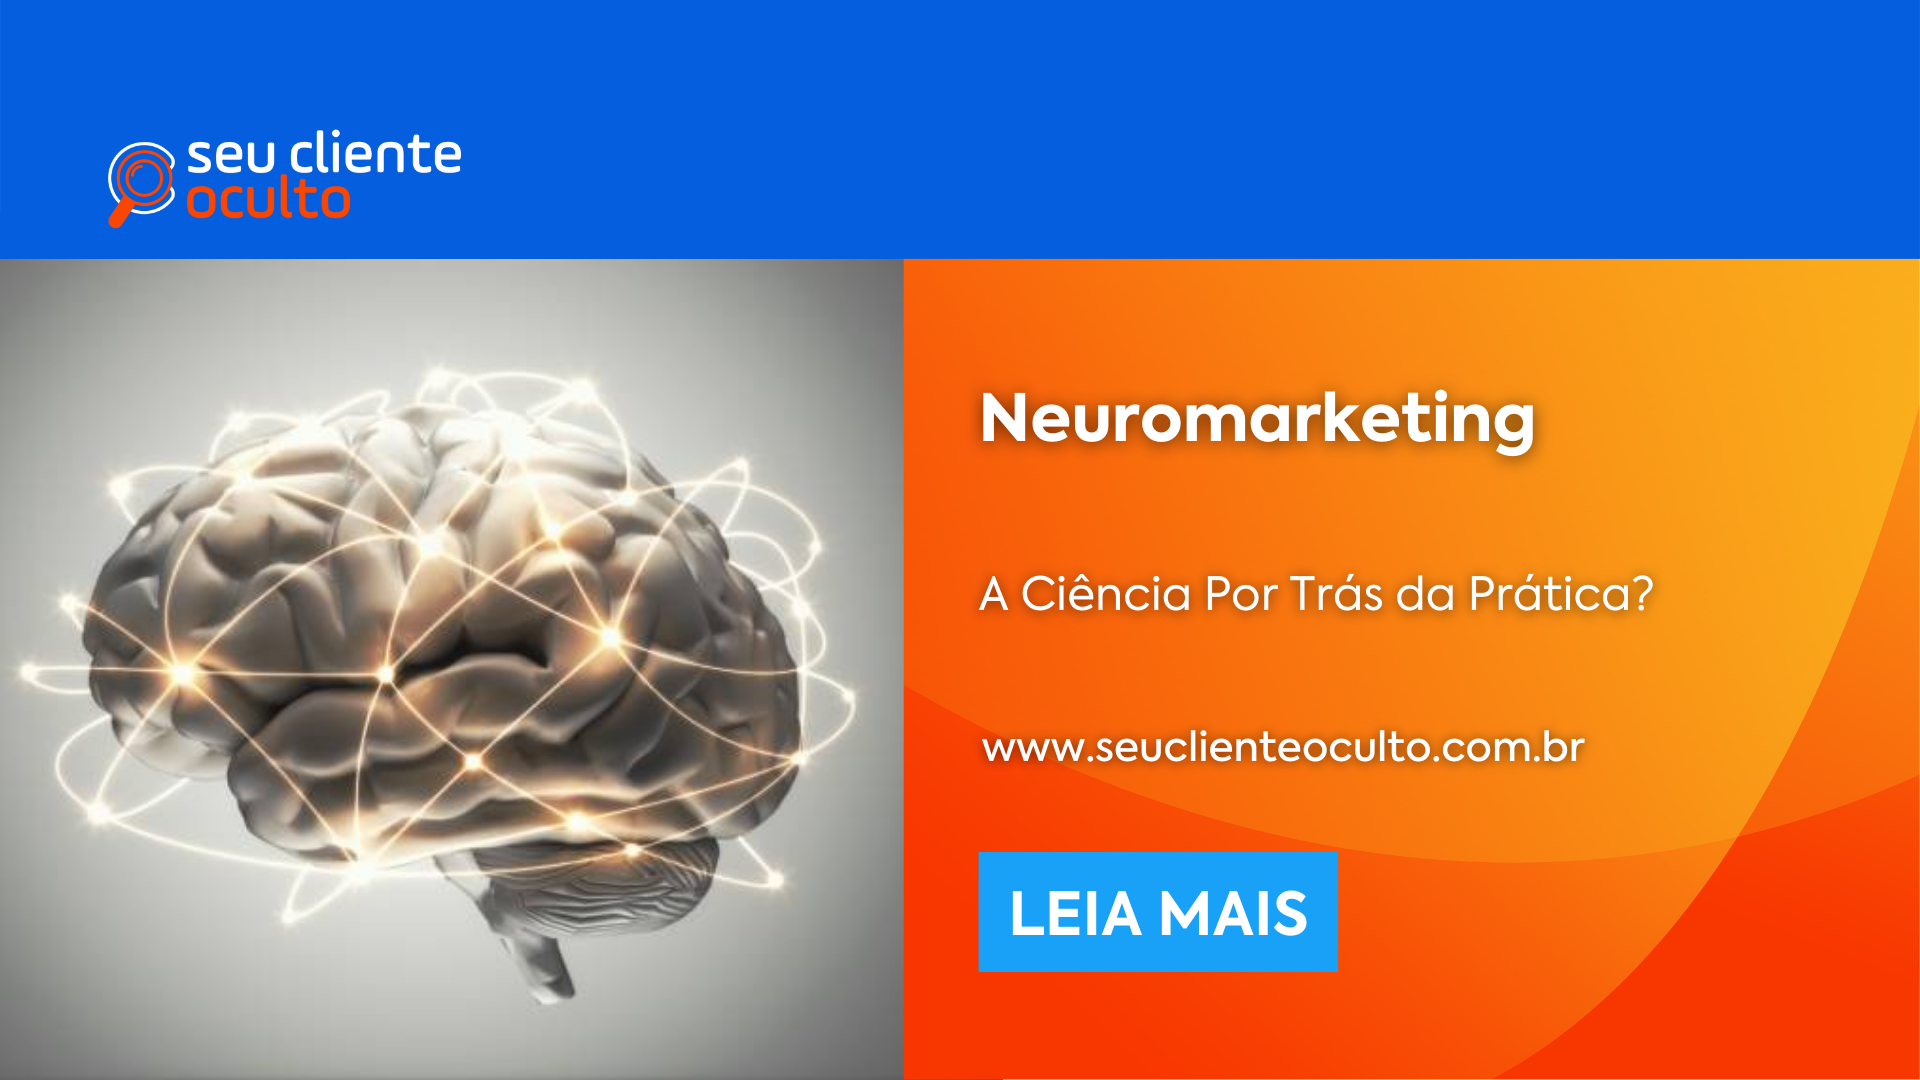 Neuromarketing: A Ciência Por Trás da Prática?